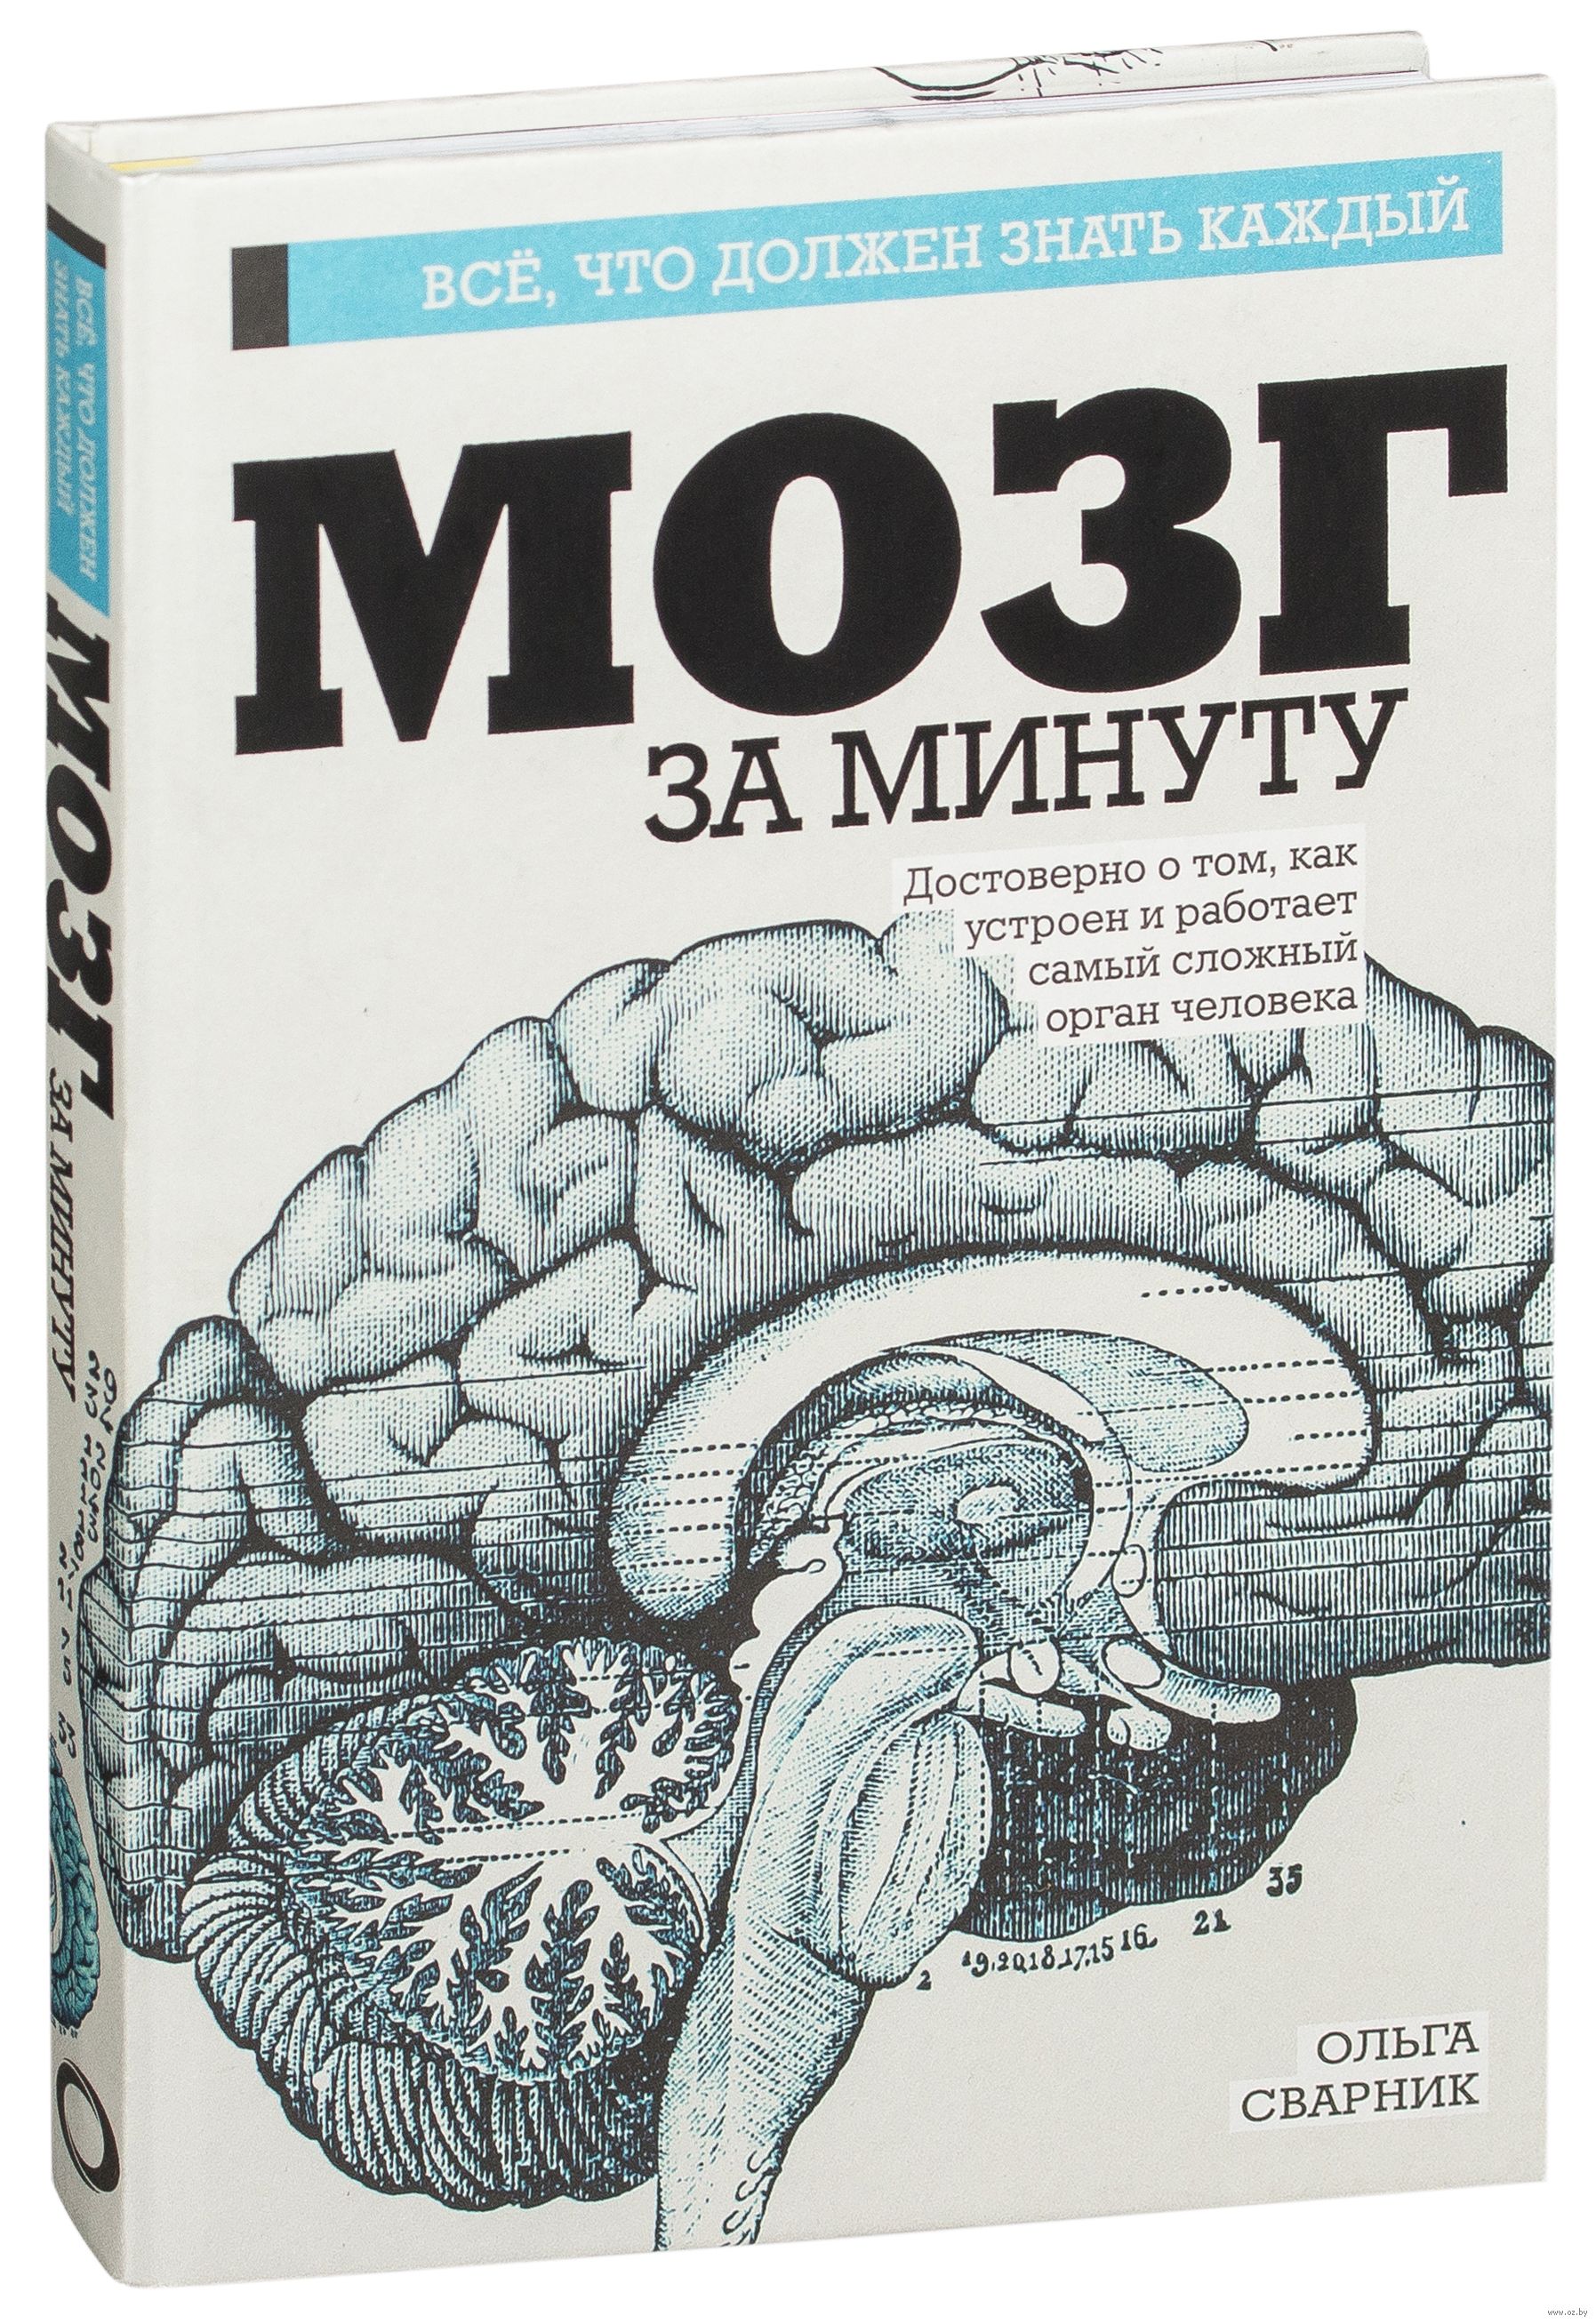 Биология мозга учебники